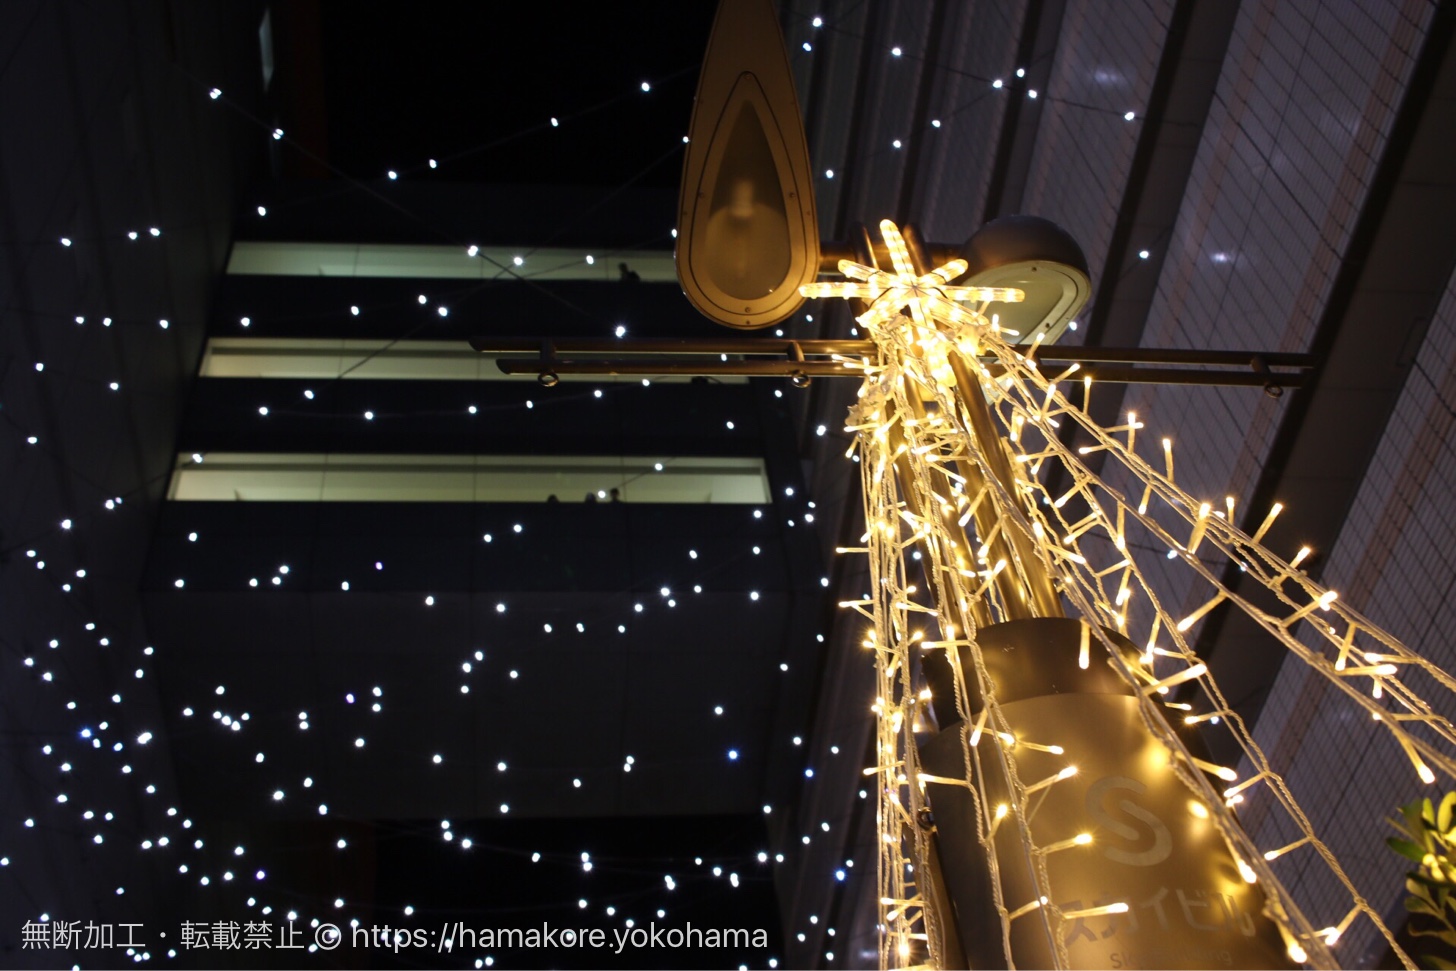 横浜駅東口 クリスマスイルミネーションが「はまテラス」で開催中！無数の星の幻想的な世界を演出